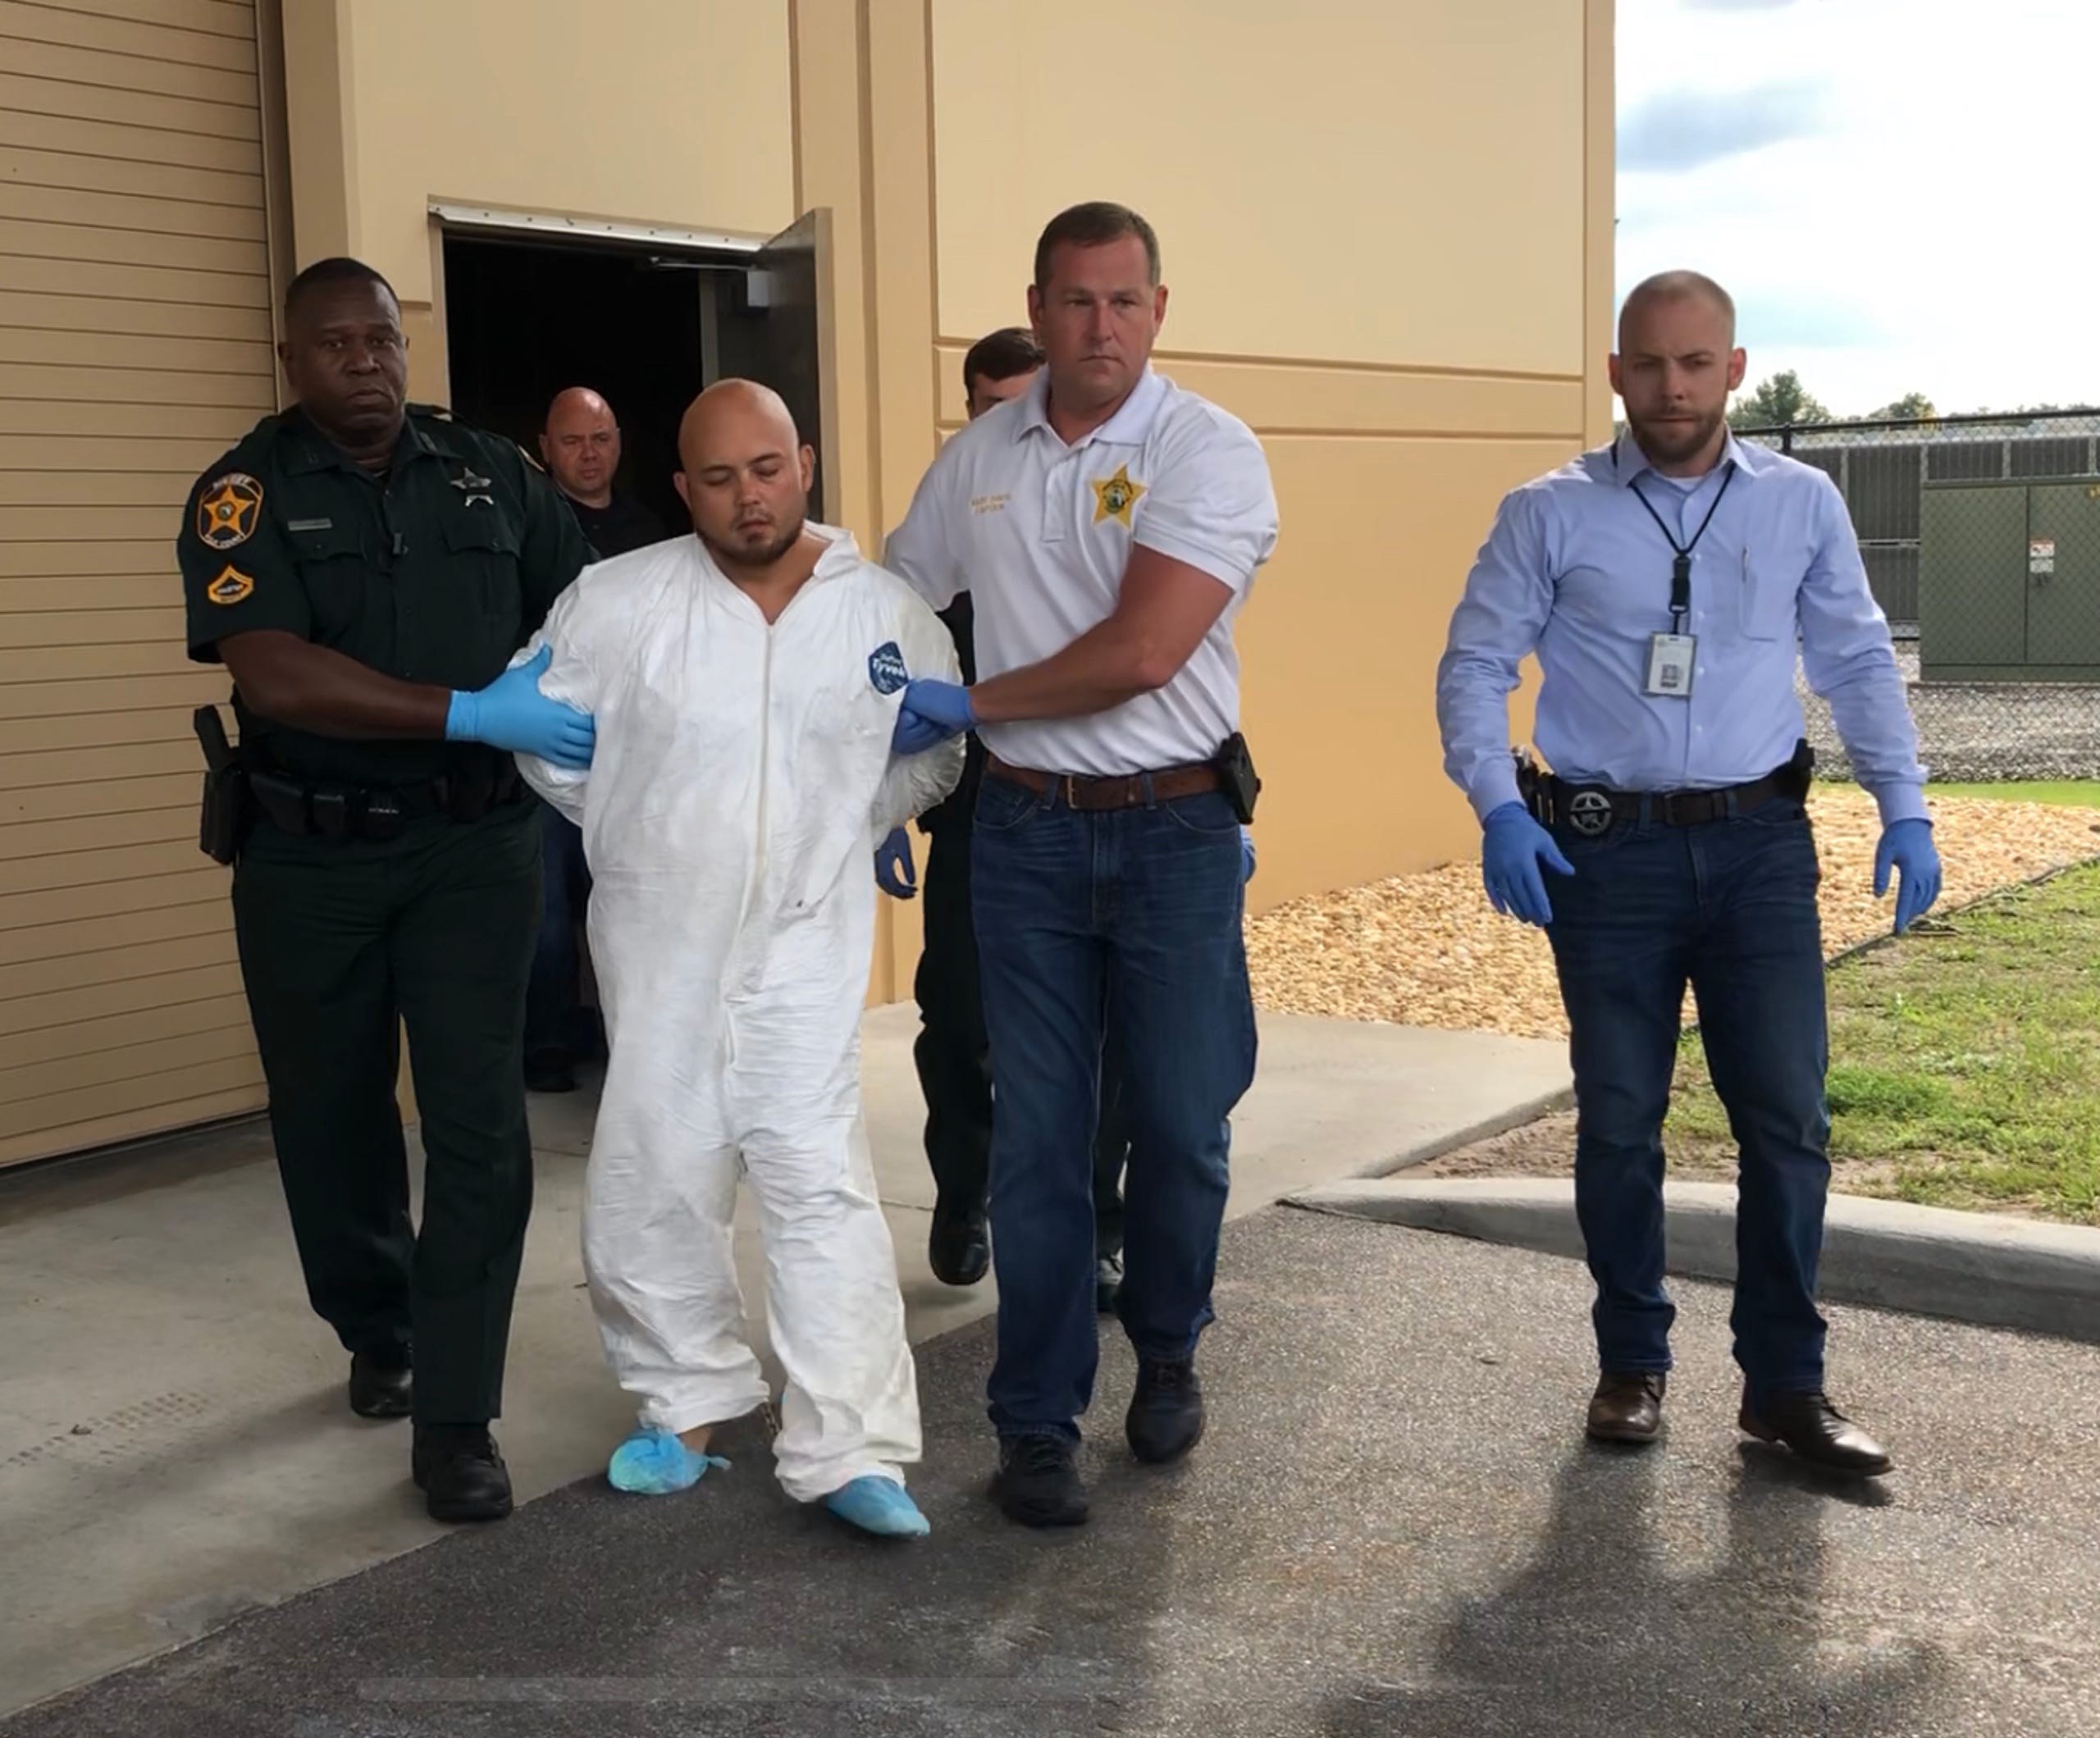 Un fost trăgător de elită a împuşcat mortal patru persoane în Florida, inclusiv un bebeluş